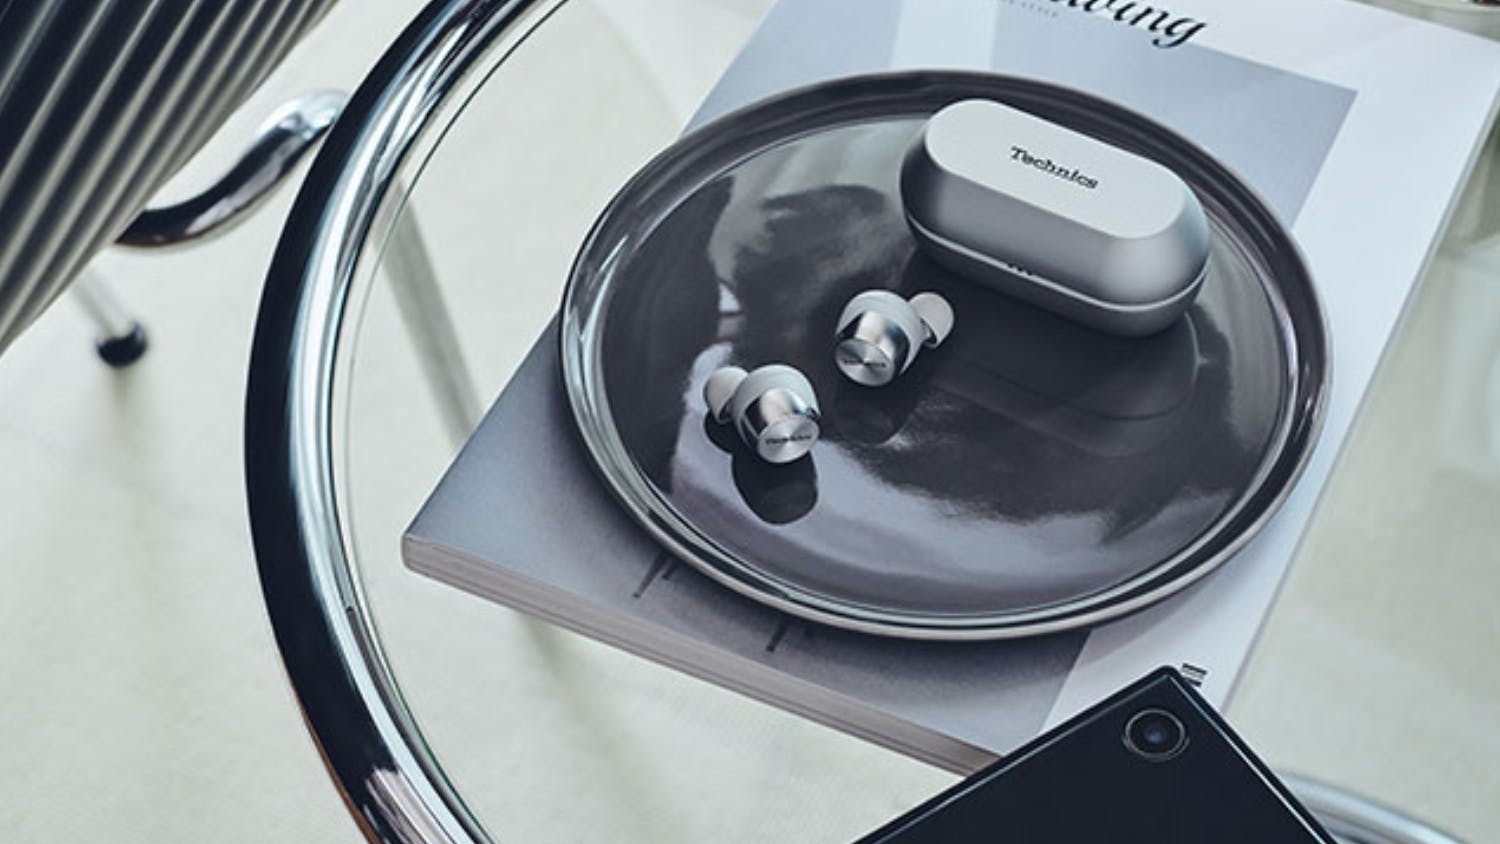 Technics AZ70 Wireless Noise Cancelling In-Ear Headphones - Silver